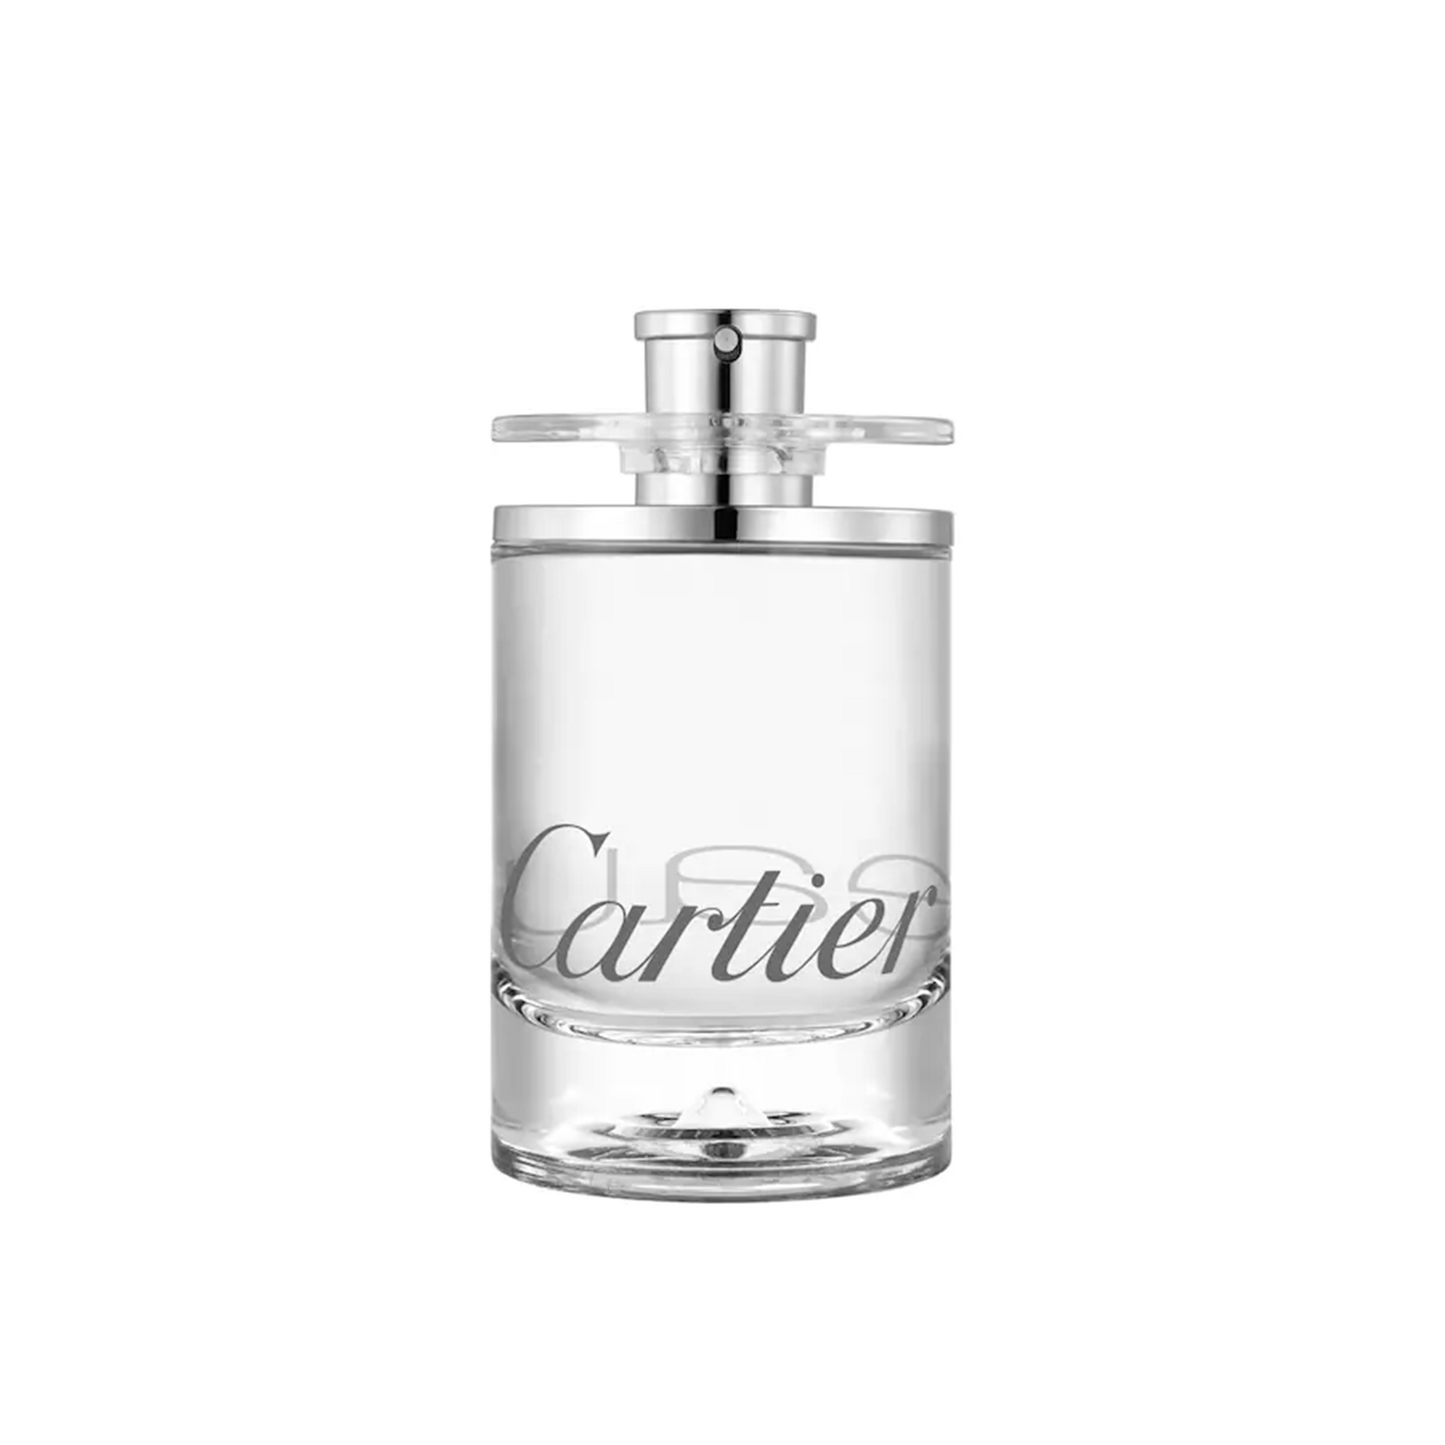 Cartier - L'eau de Cartier - Edt 100ml